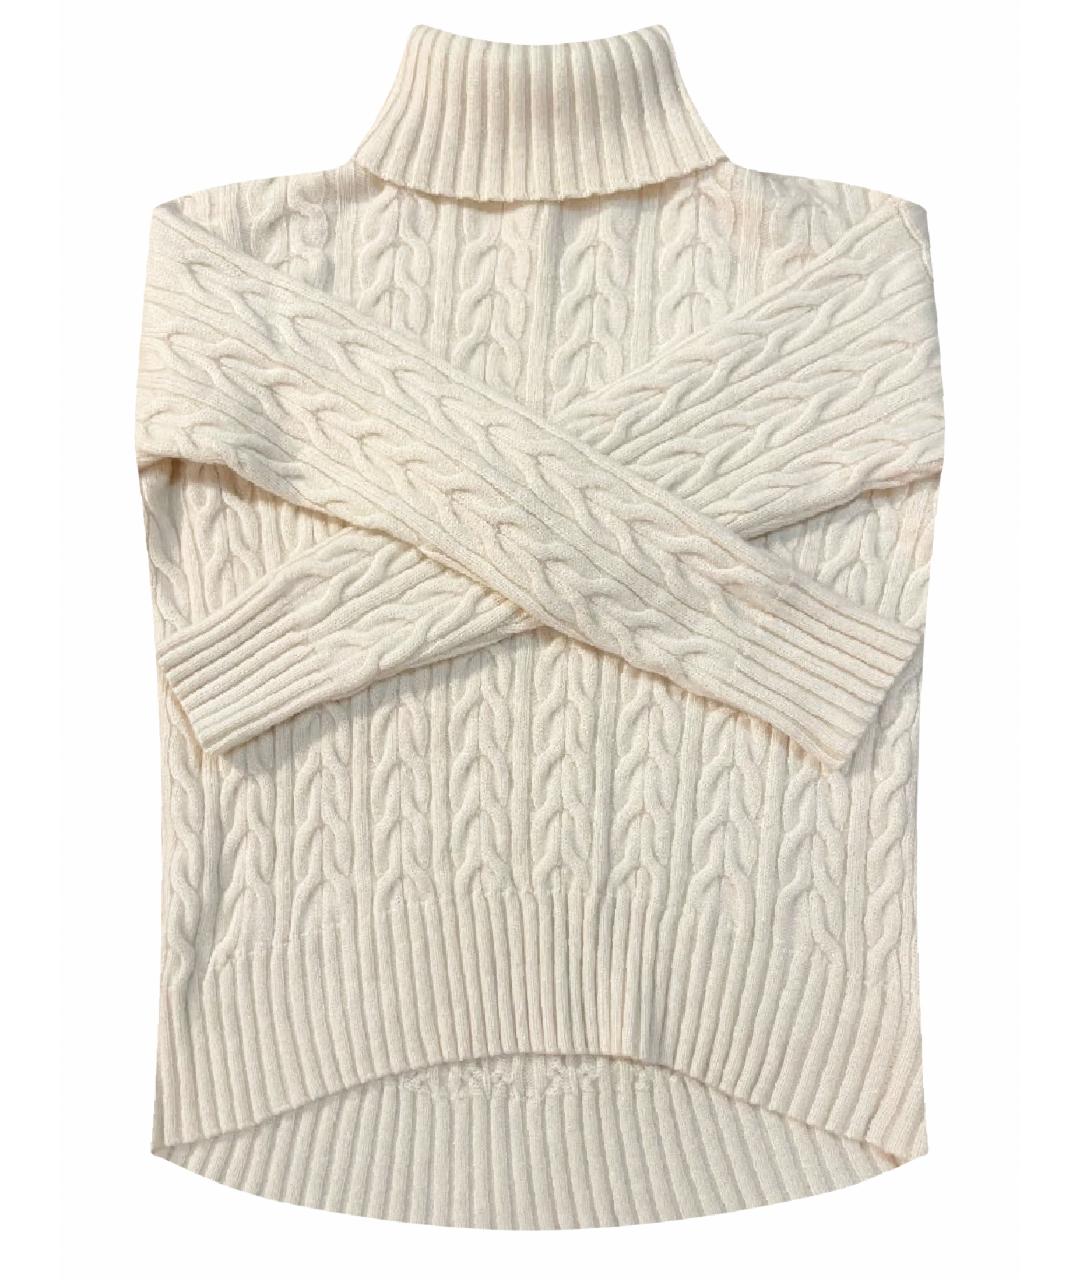 YANA DRESS Бежевый кашемировый джемпер / свитер, фото 1